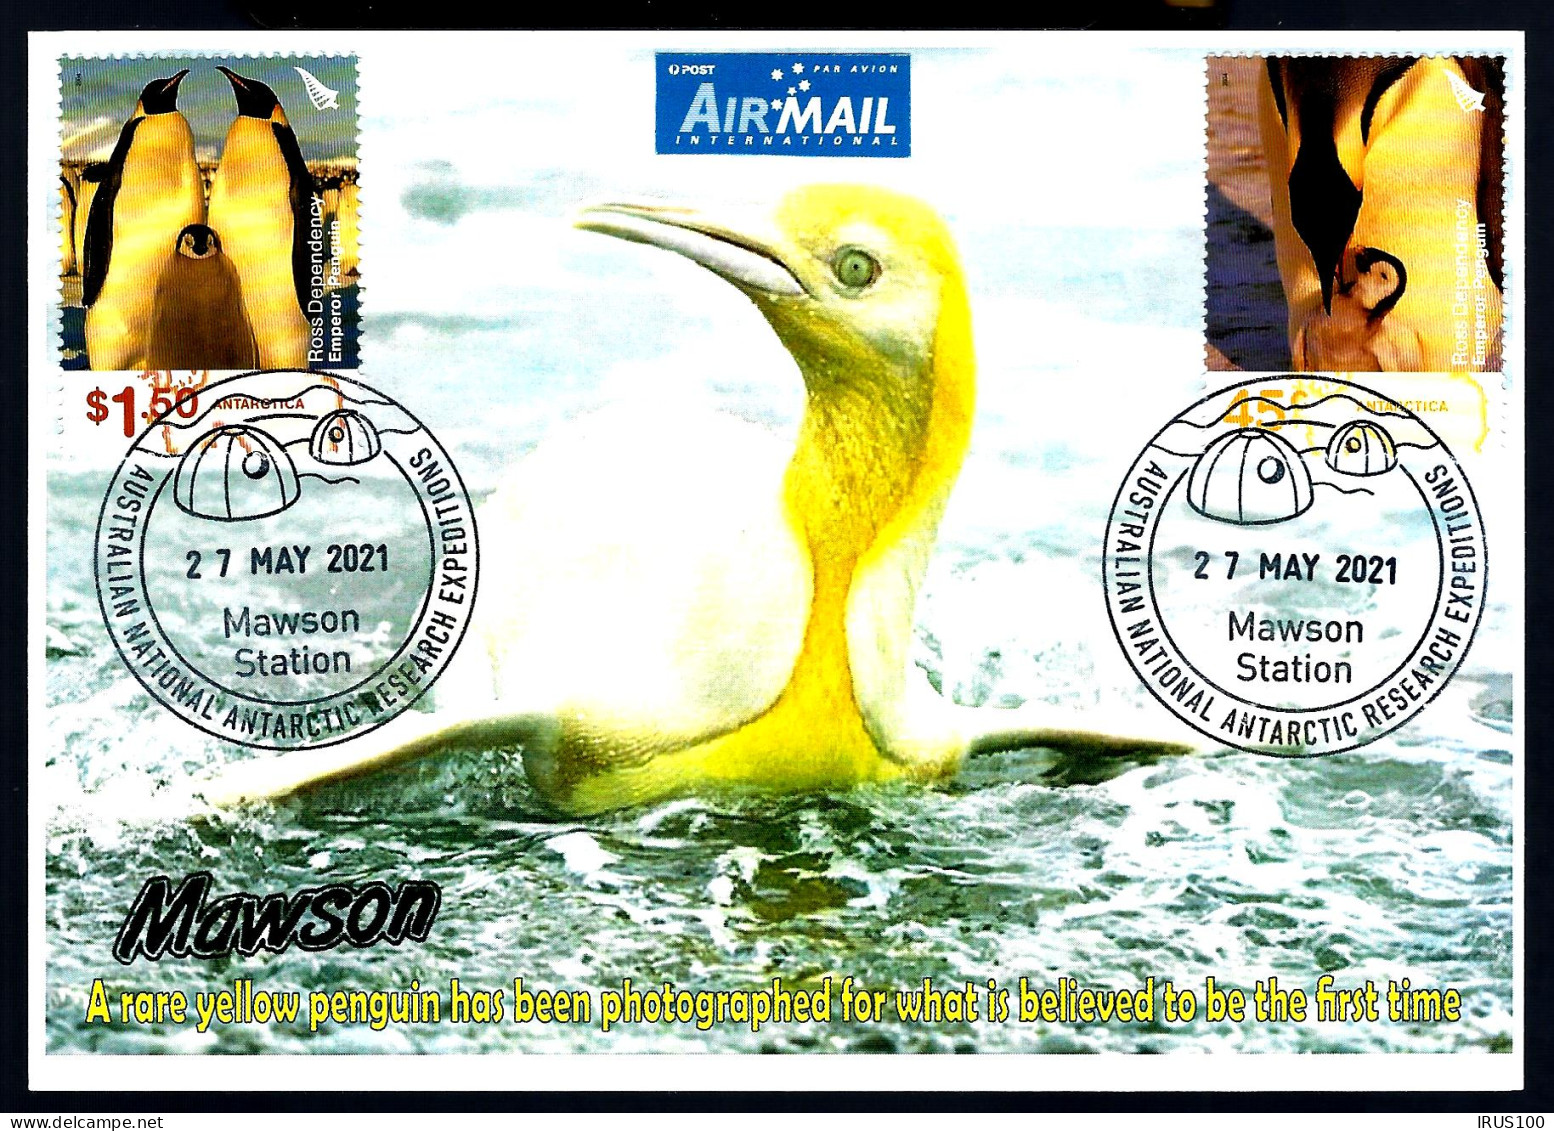 ANTARCTIC - NAWSON STATION - PINGUIN JAUNE (RARE) -  - Antarktischen Tierwelt